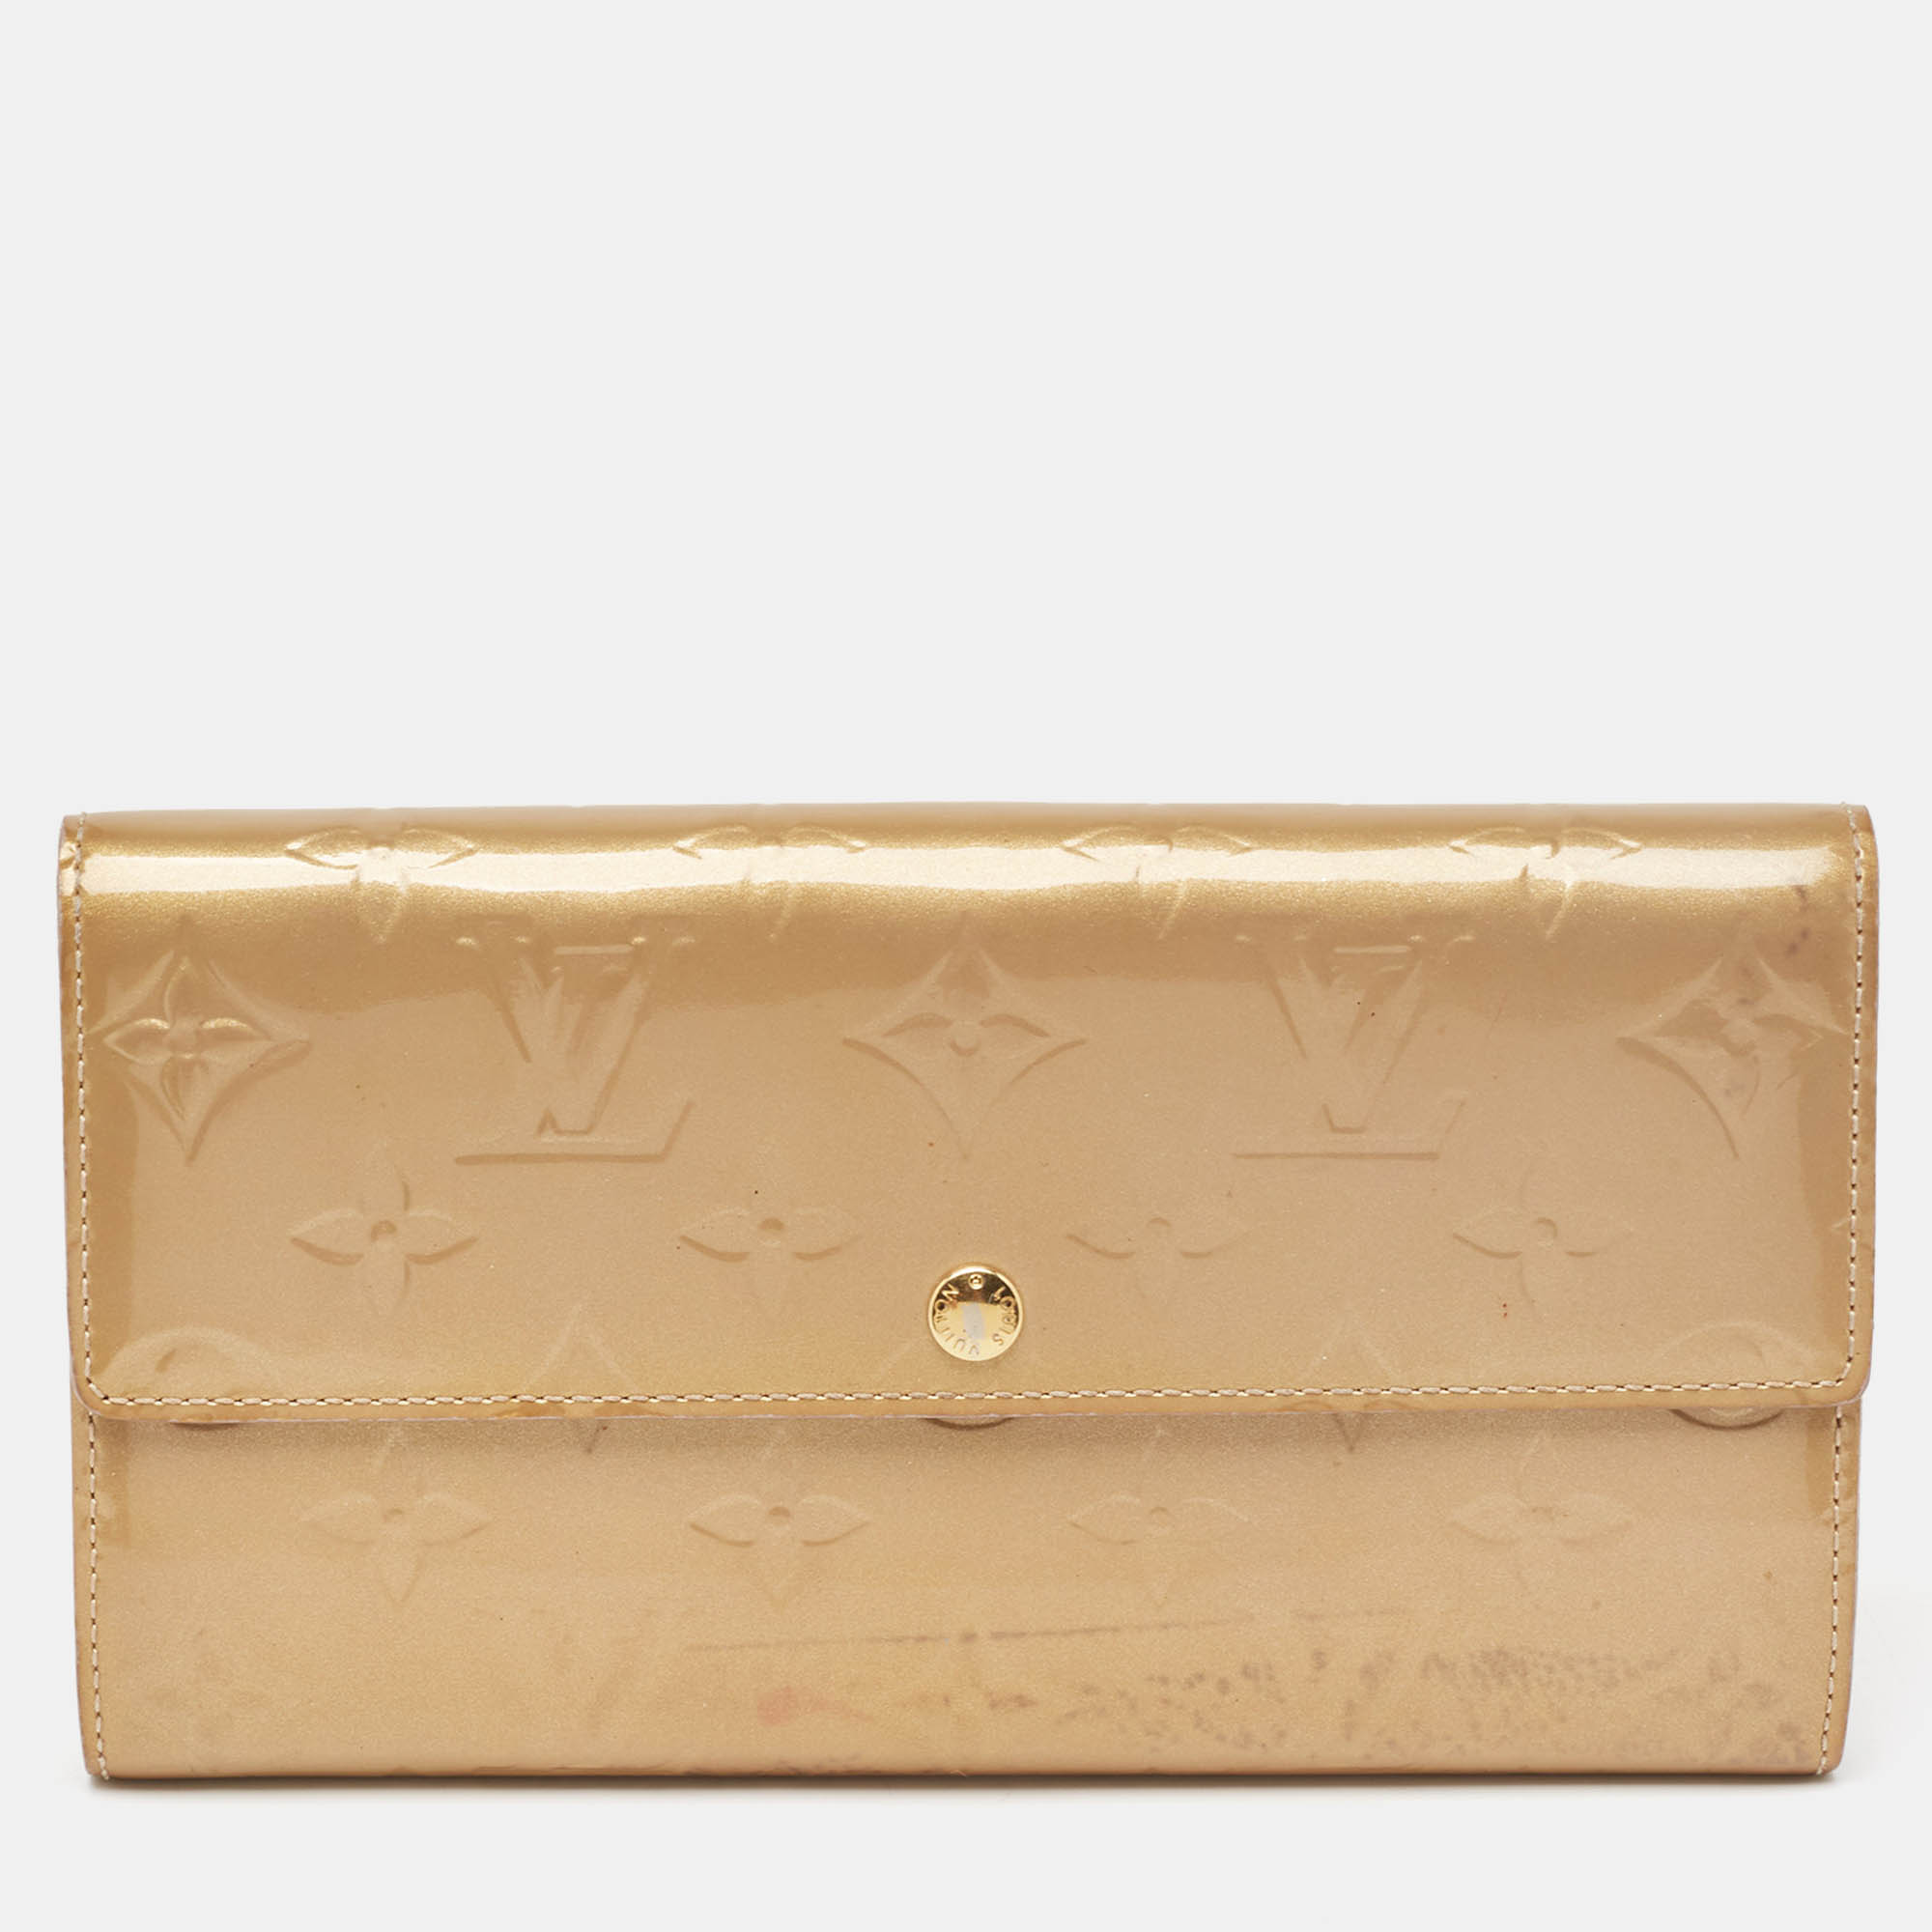 Louis vuitton beige poudre monogram vernis sarah wallet